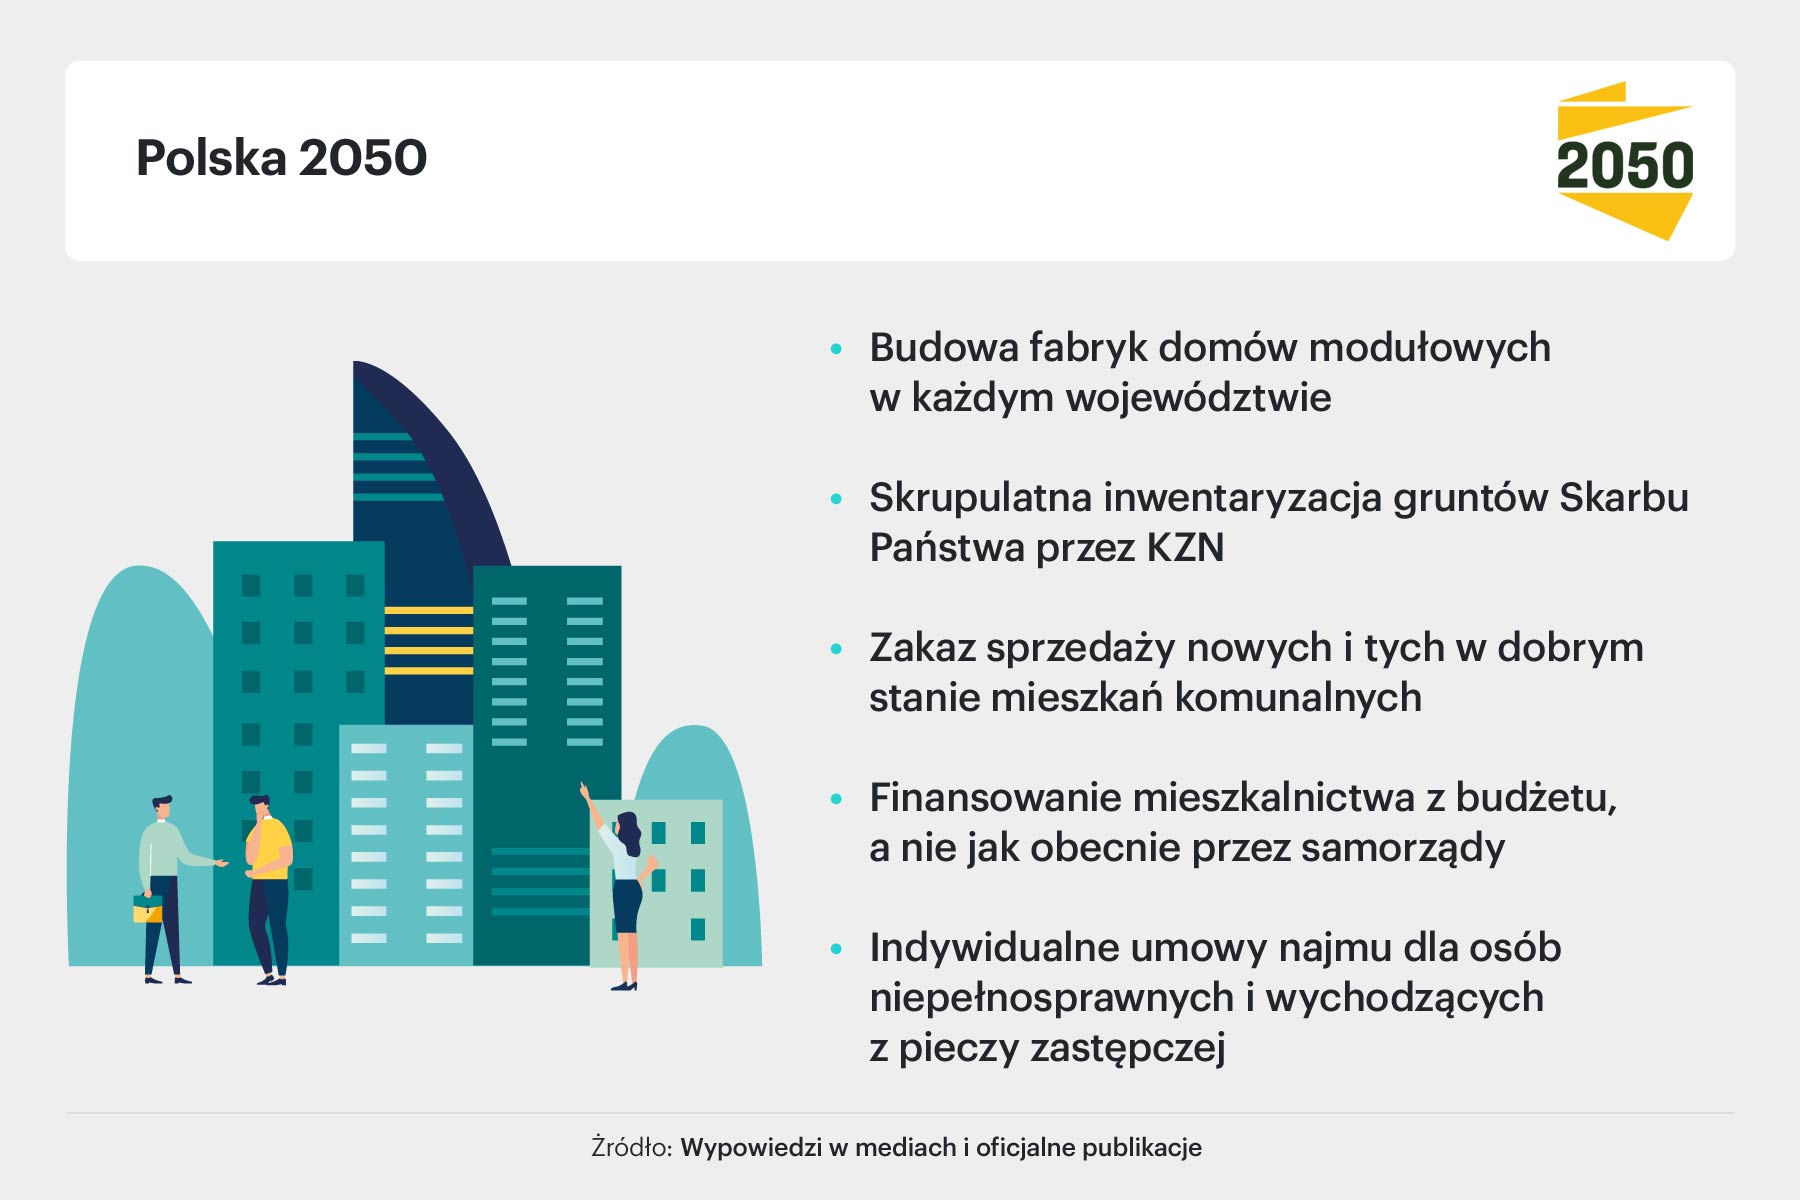 PL 2050